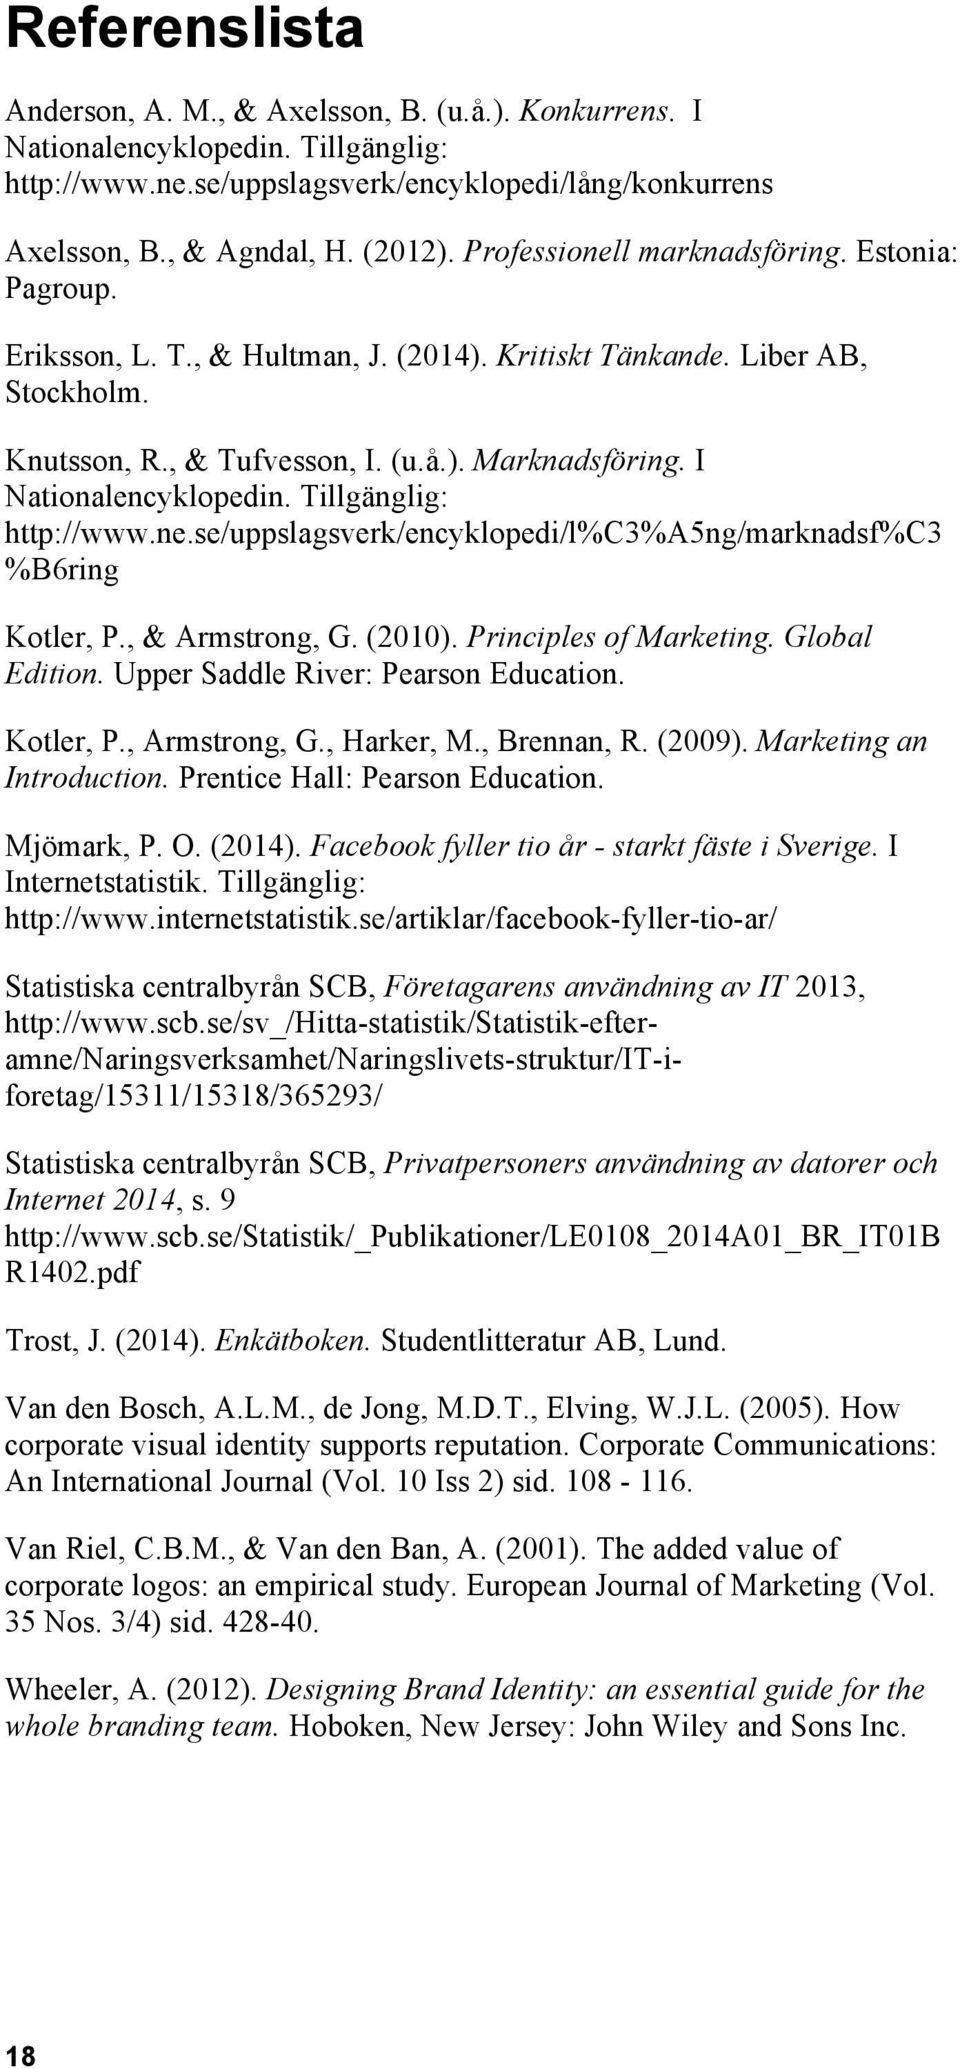 I Nationalencyklopedin. Tillgänglig: http://www.ne.se/uppslagsverk/encyklopedi/l%c3%a5ng/marknadsf%c3 %B6ring Kotler, P., & Armstrong, G. (2010). Principles of Marketing. Global Edition.